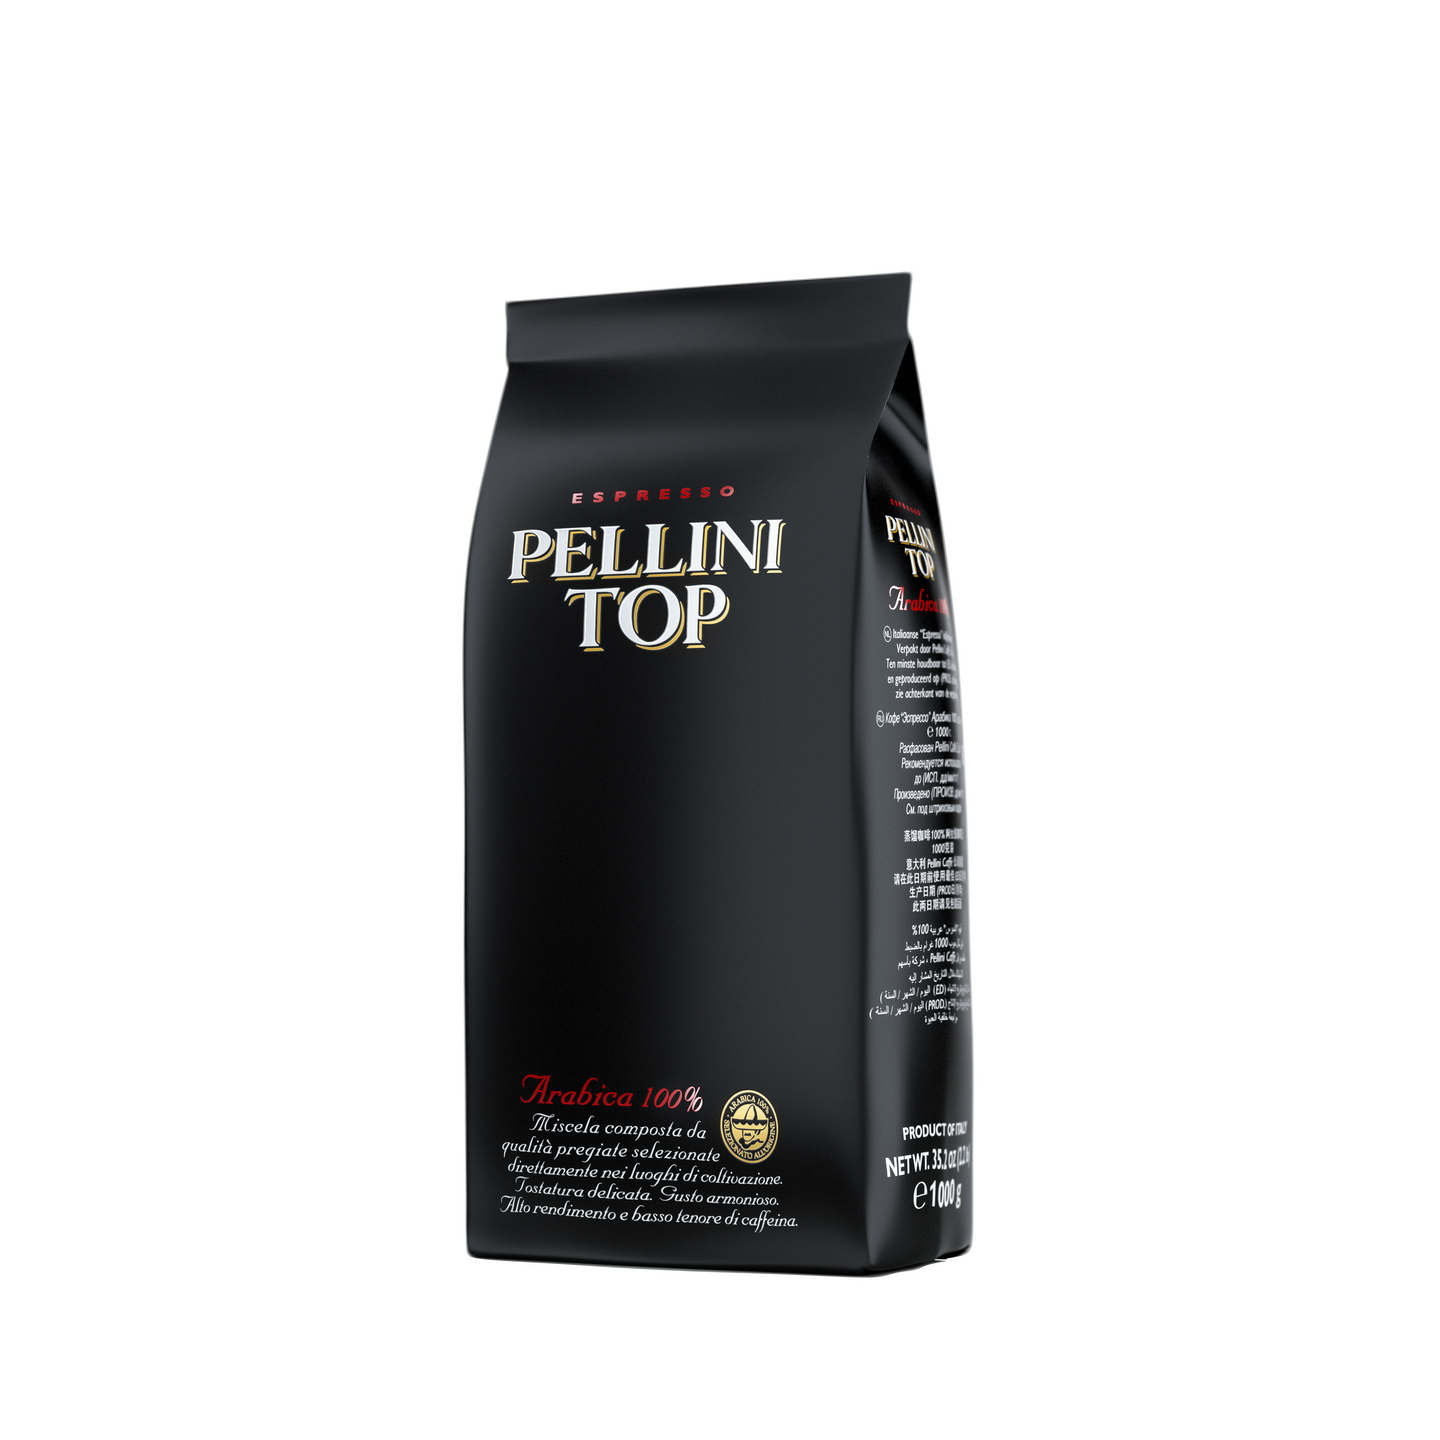 Pellini TOP 1000g espressopapu